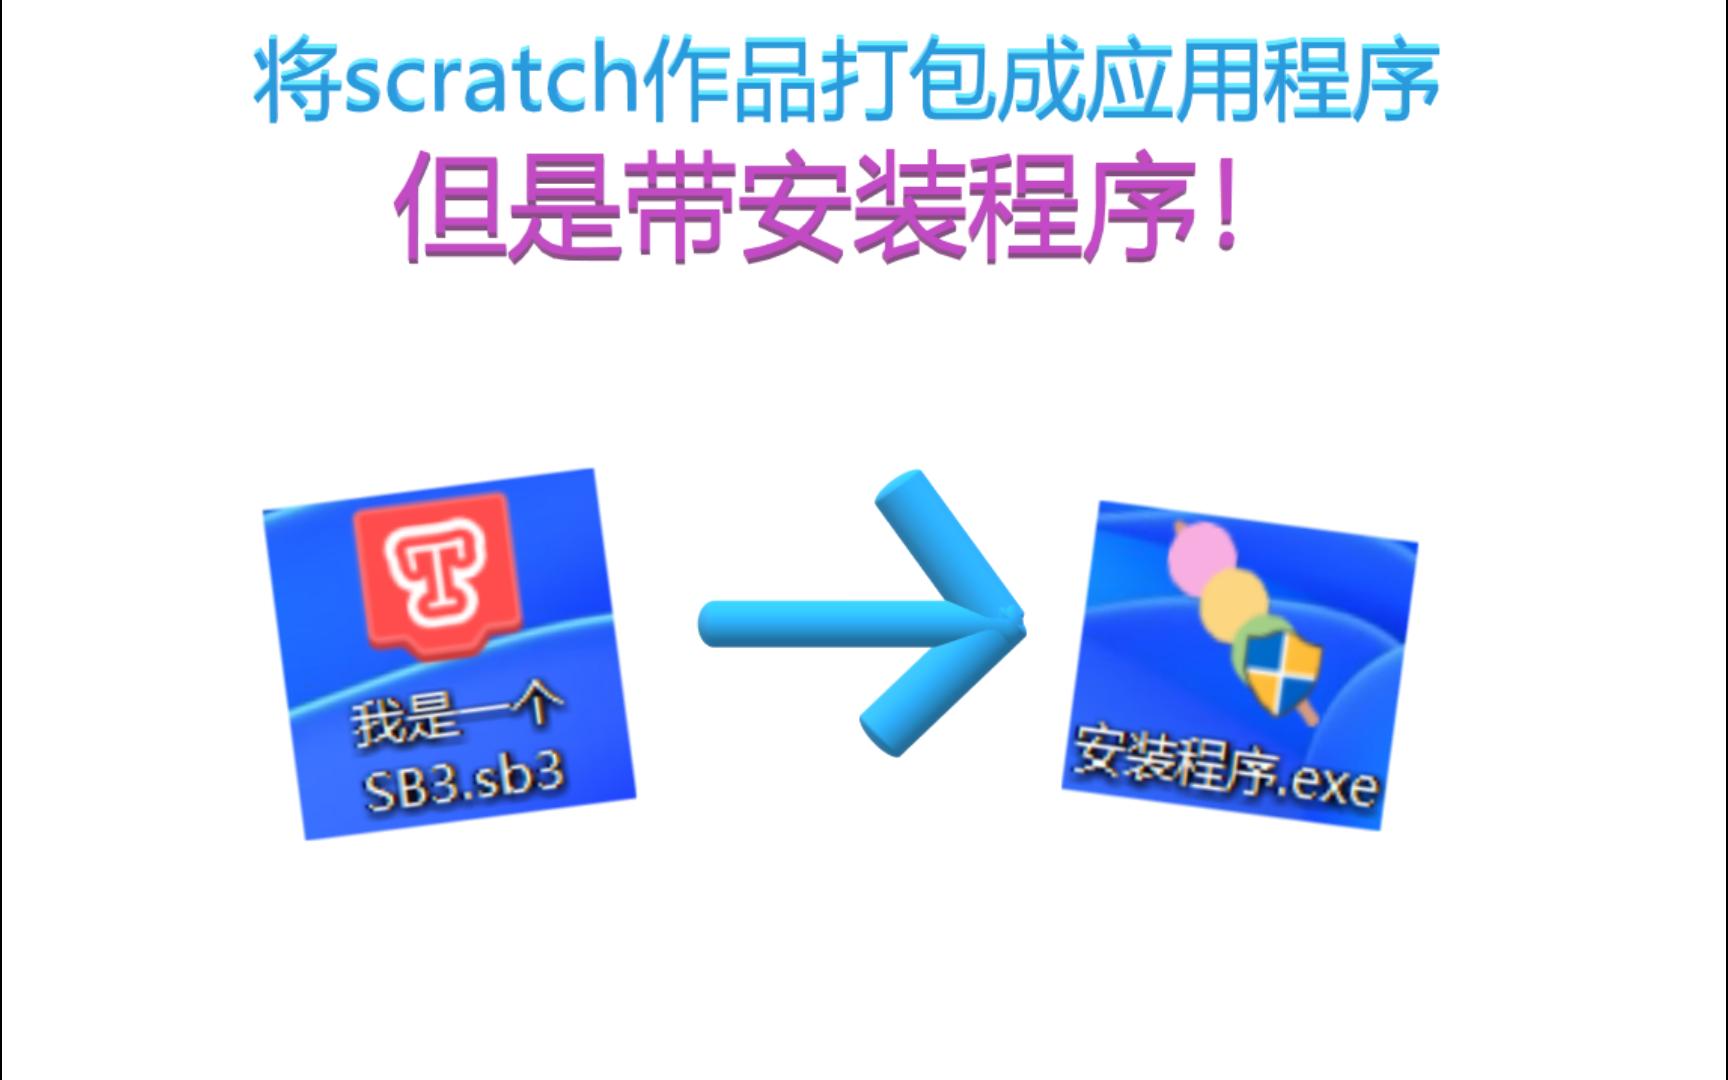 如何将你的scratch作品制作成软件？带安装程序的那种！